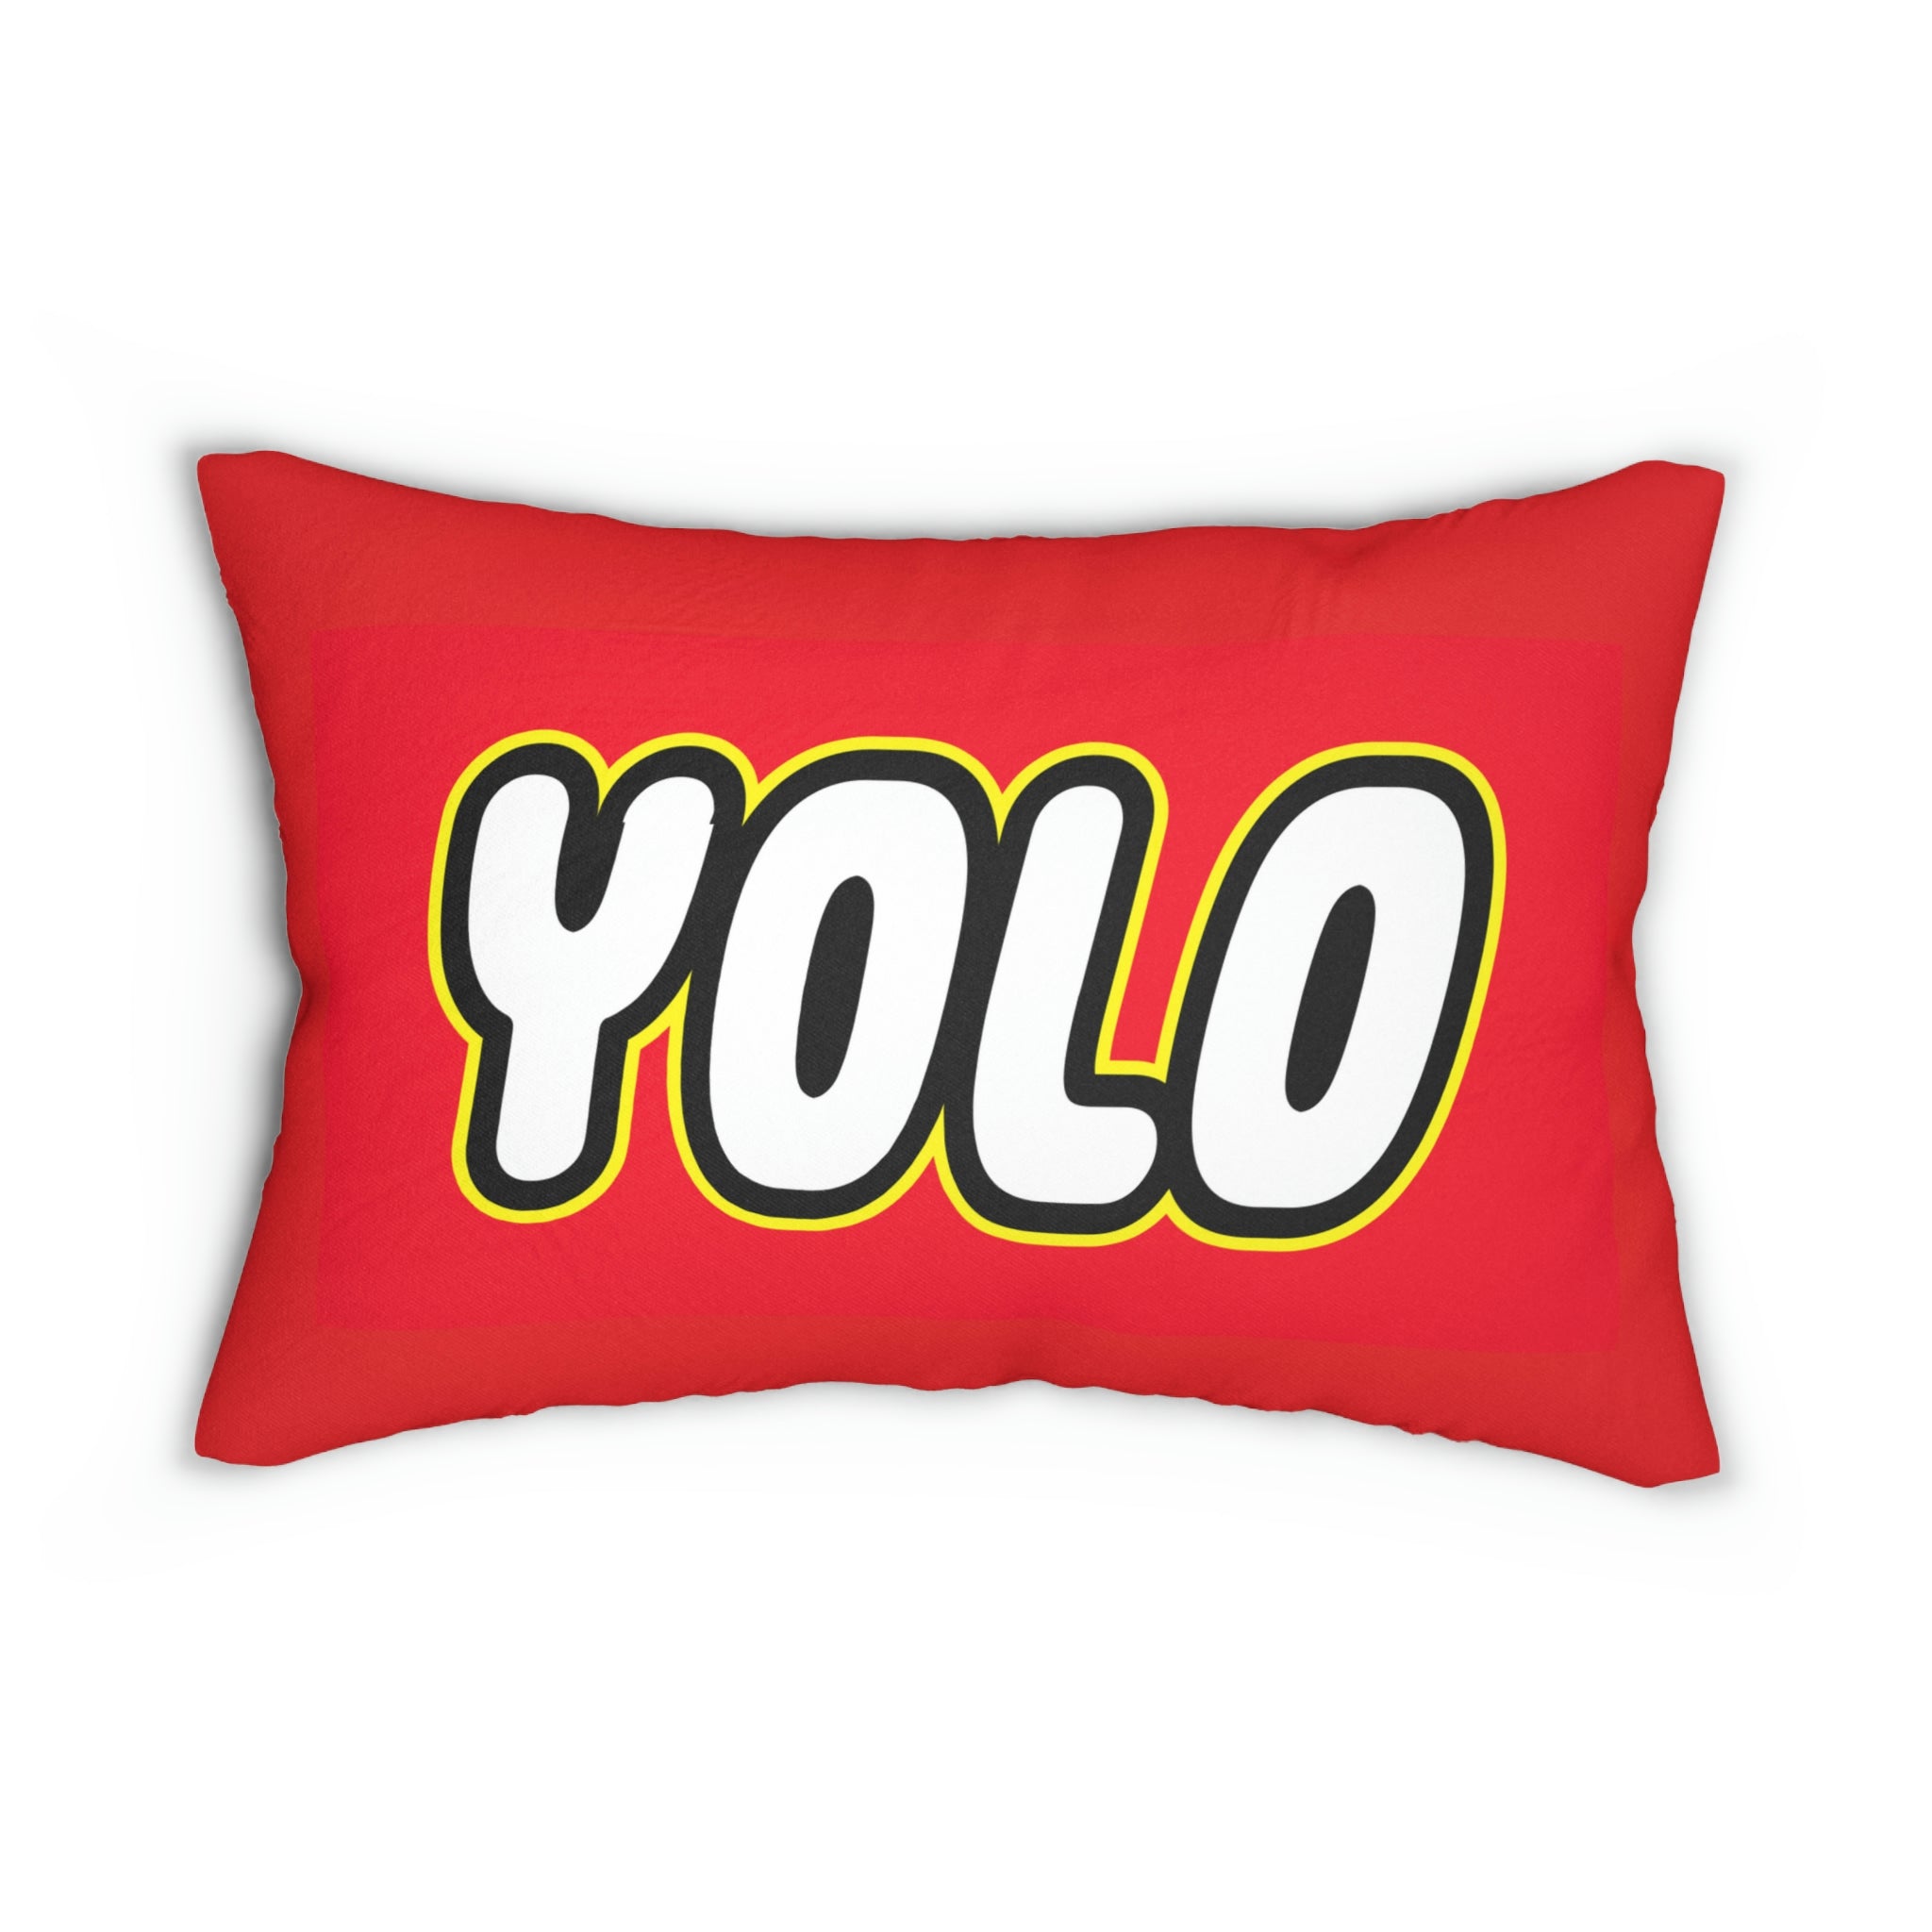 Yolo Spun Polyester Lumbar Pillow